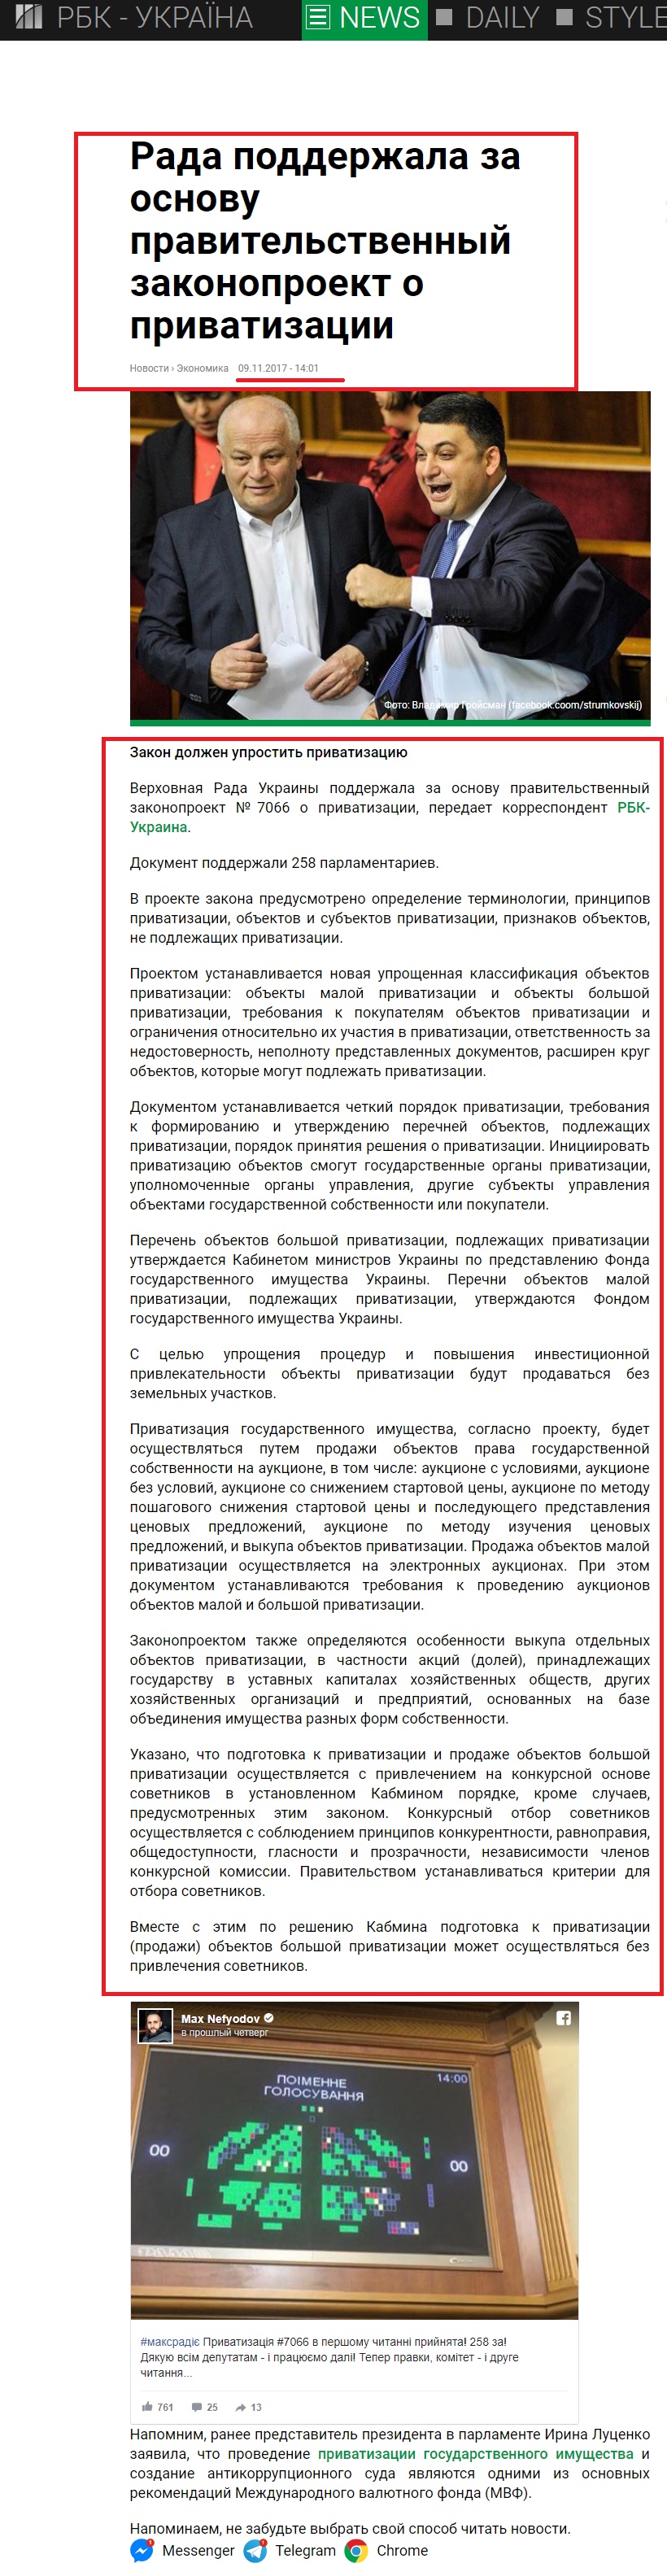 https://www.rbc.ua/ukr/news/rada-podderzhala-osnovu-pravitelstvennyy-1510228542.html